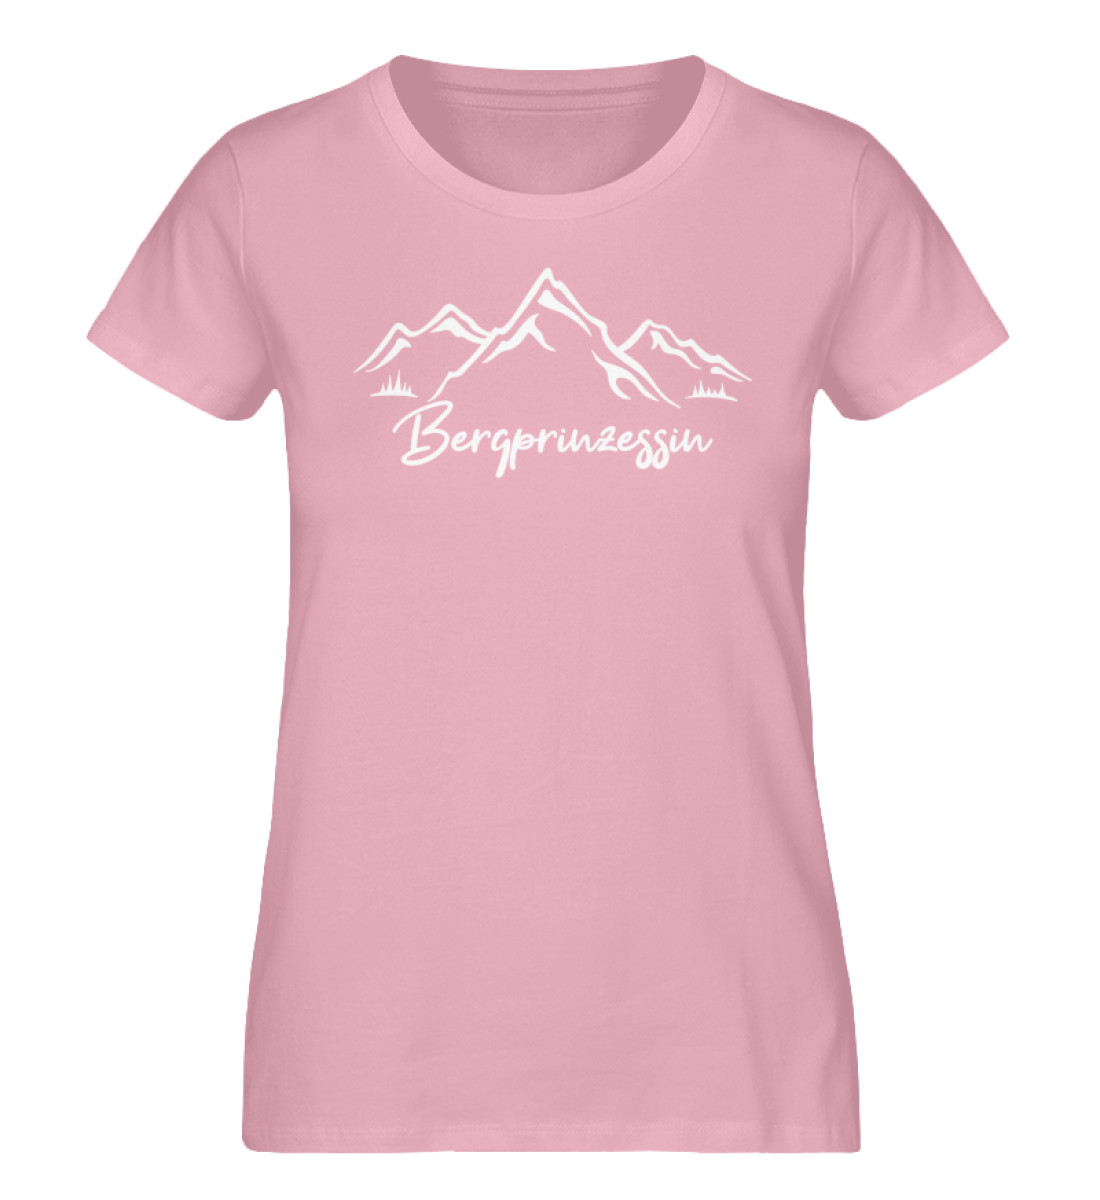 Bergprinzessin - Damen Premium Organic Shirt-6903